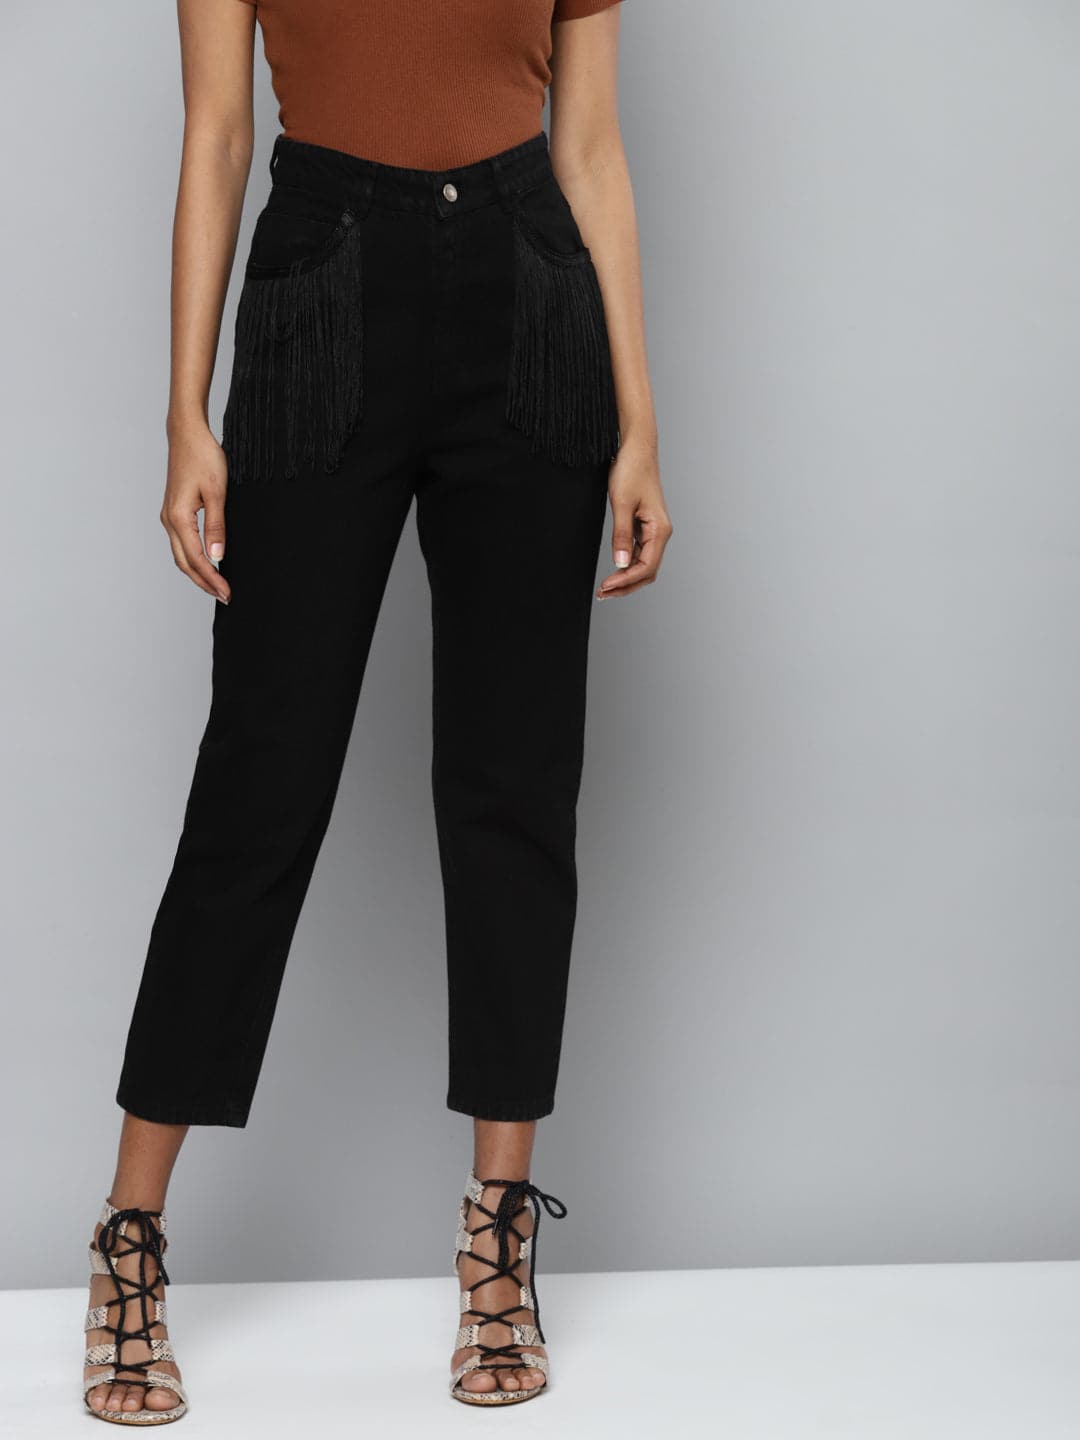 Black Denim Pocket Fringe Lace Mom Jeans-Jeans-SASSAFRAS